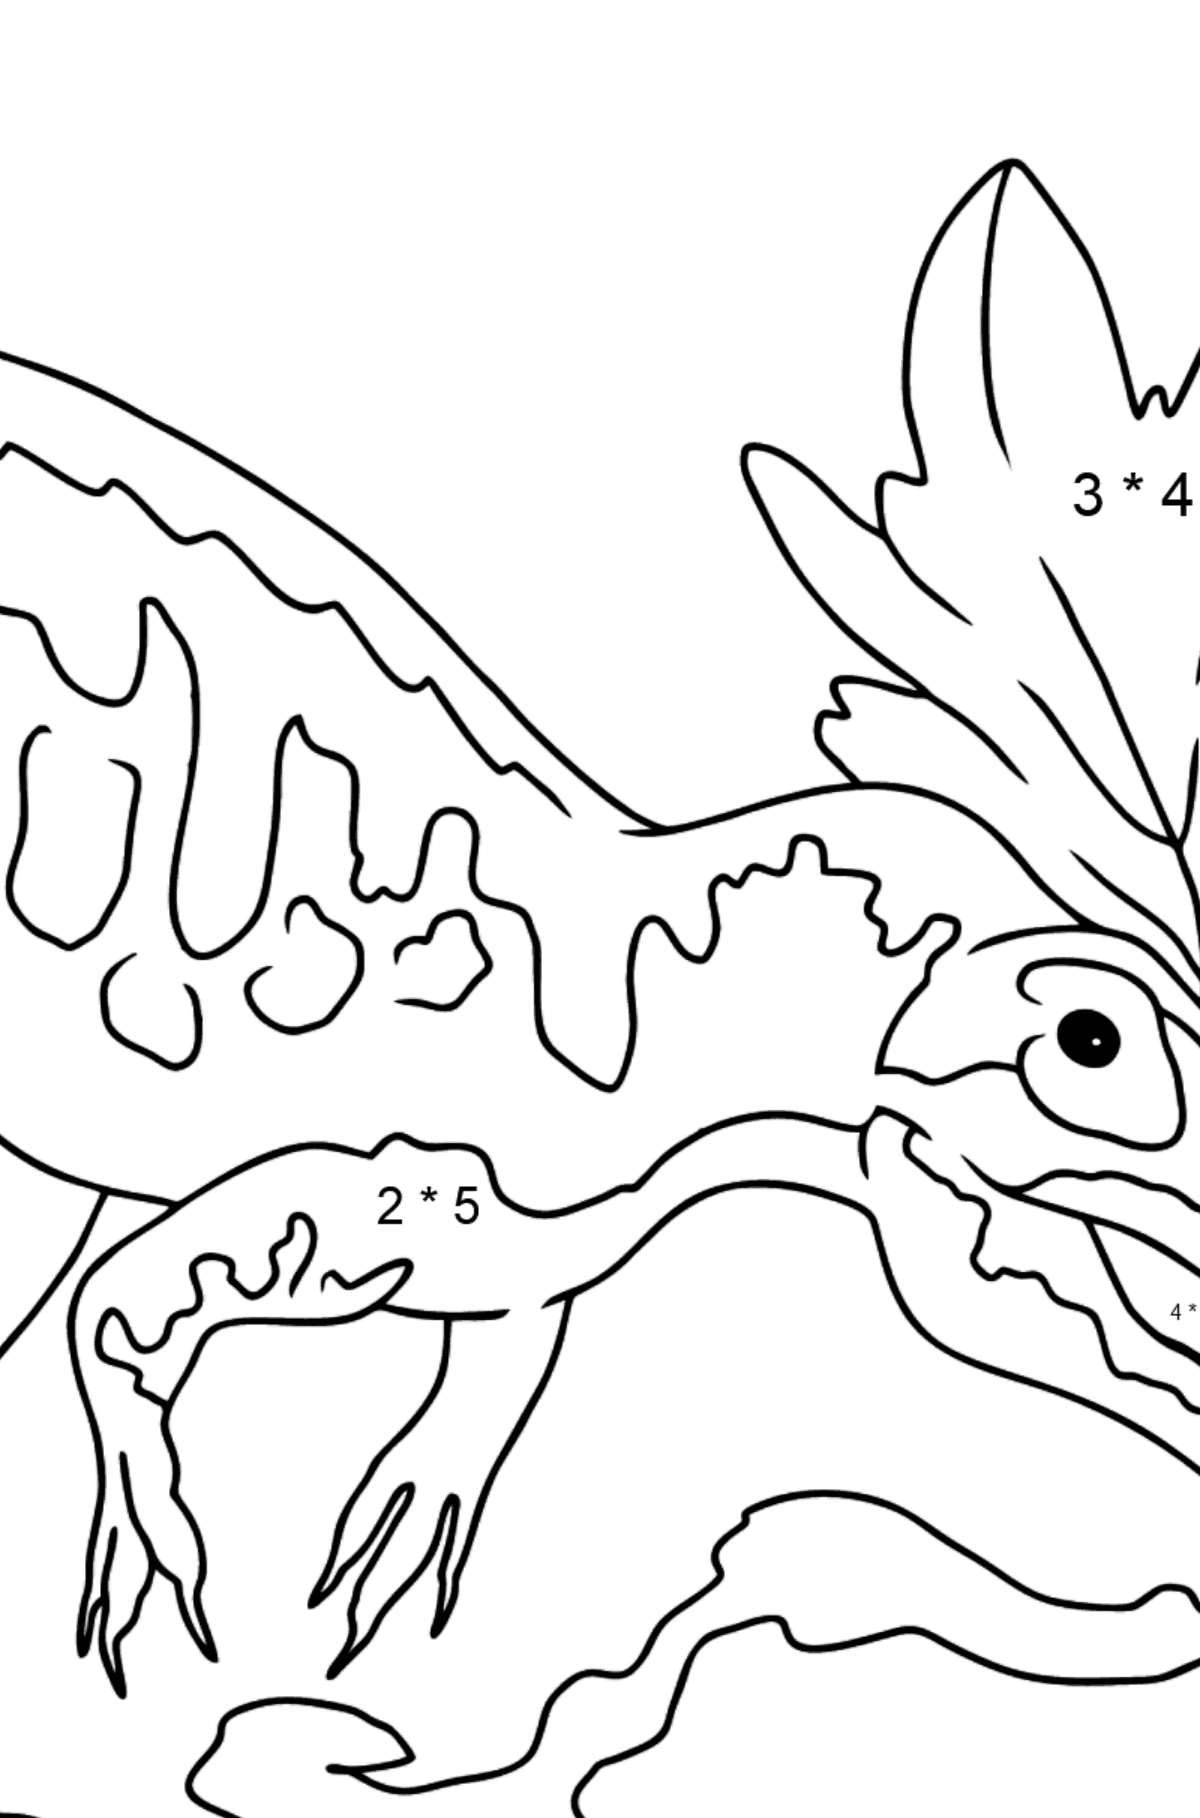 Dibujo para colorear de alosaurio (fácil) - Colorear con Matemáticas - Multiplicaciones para Niños